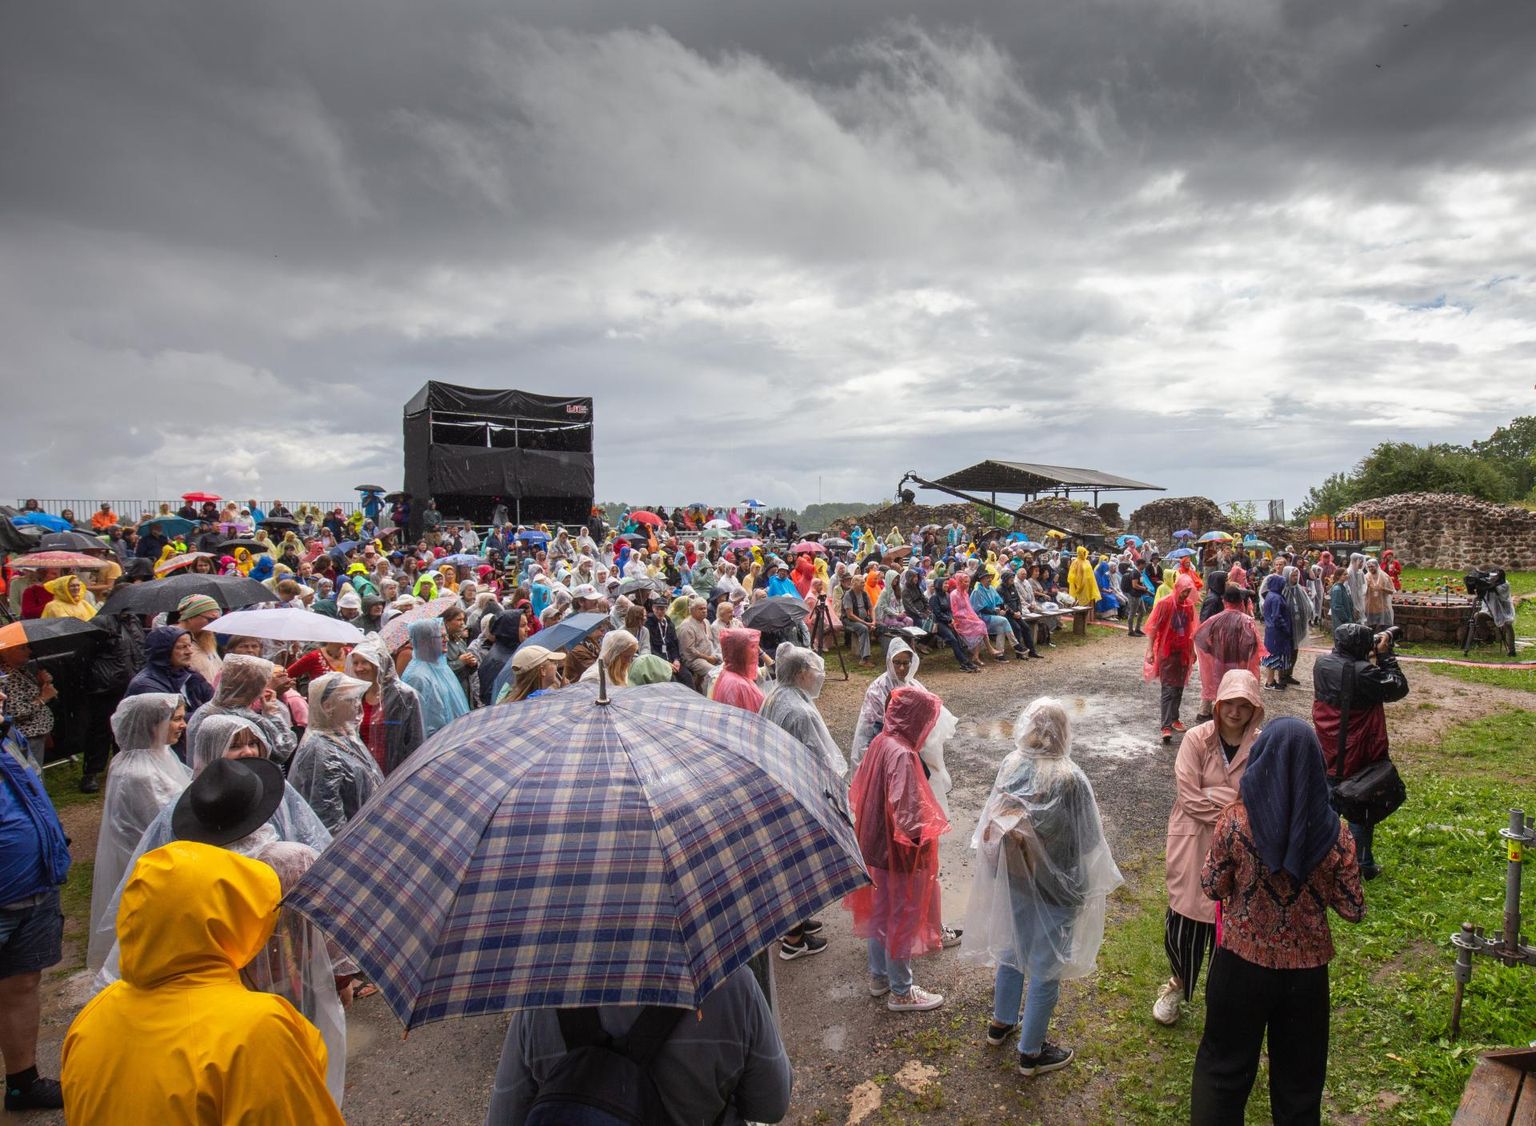 XXIX Viljandi pärimusmuusika festival kuulutati avatuks eelmisel neljapäeval vihmasaju ja hea tujuga. Pilt illustratiivne